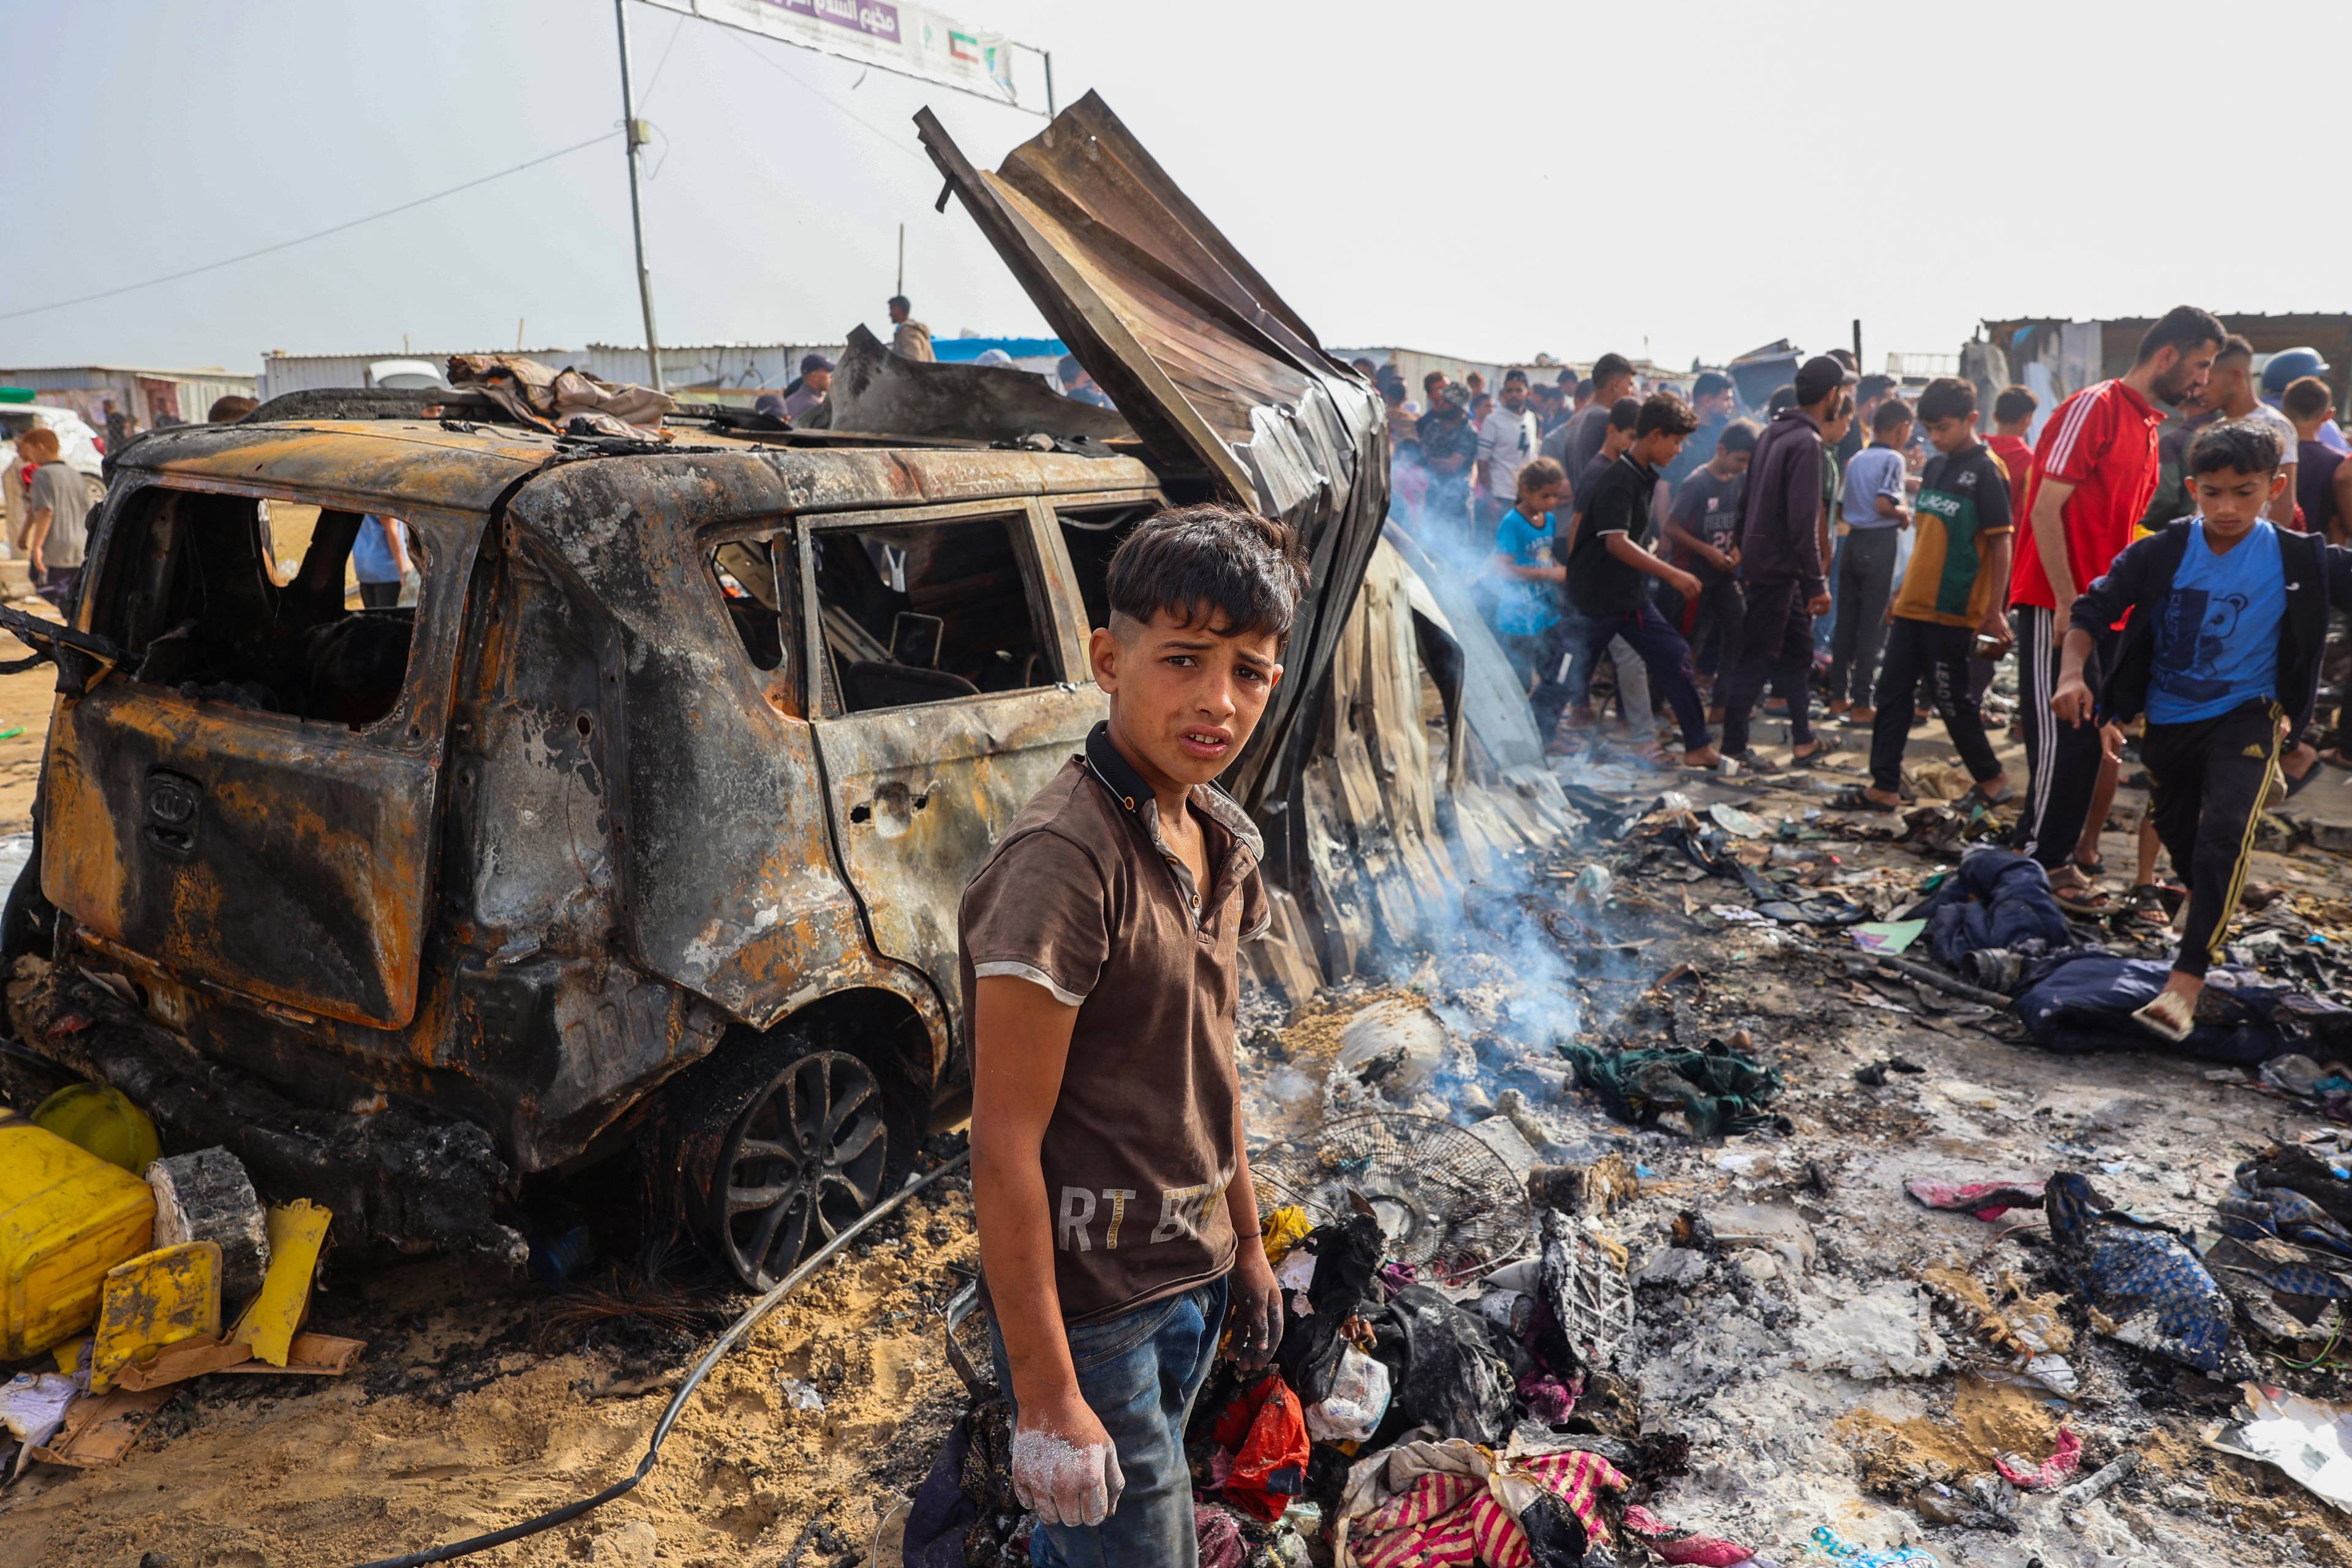 Nastoletni chłopiec stoi na tle spalonego samochodu, pośród pozostałości po namiotach spalonych po izraelskim ataku w Rafah